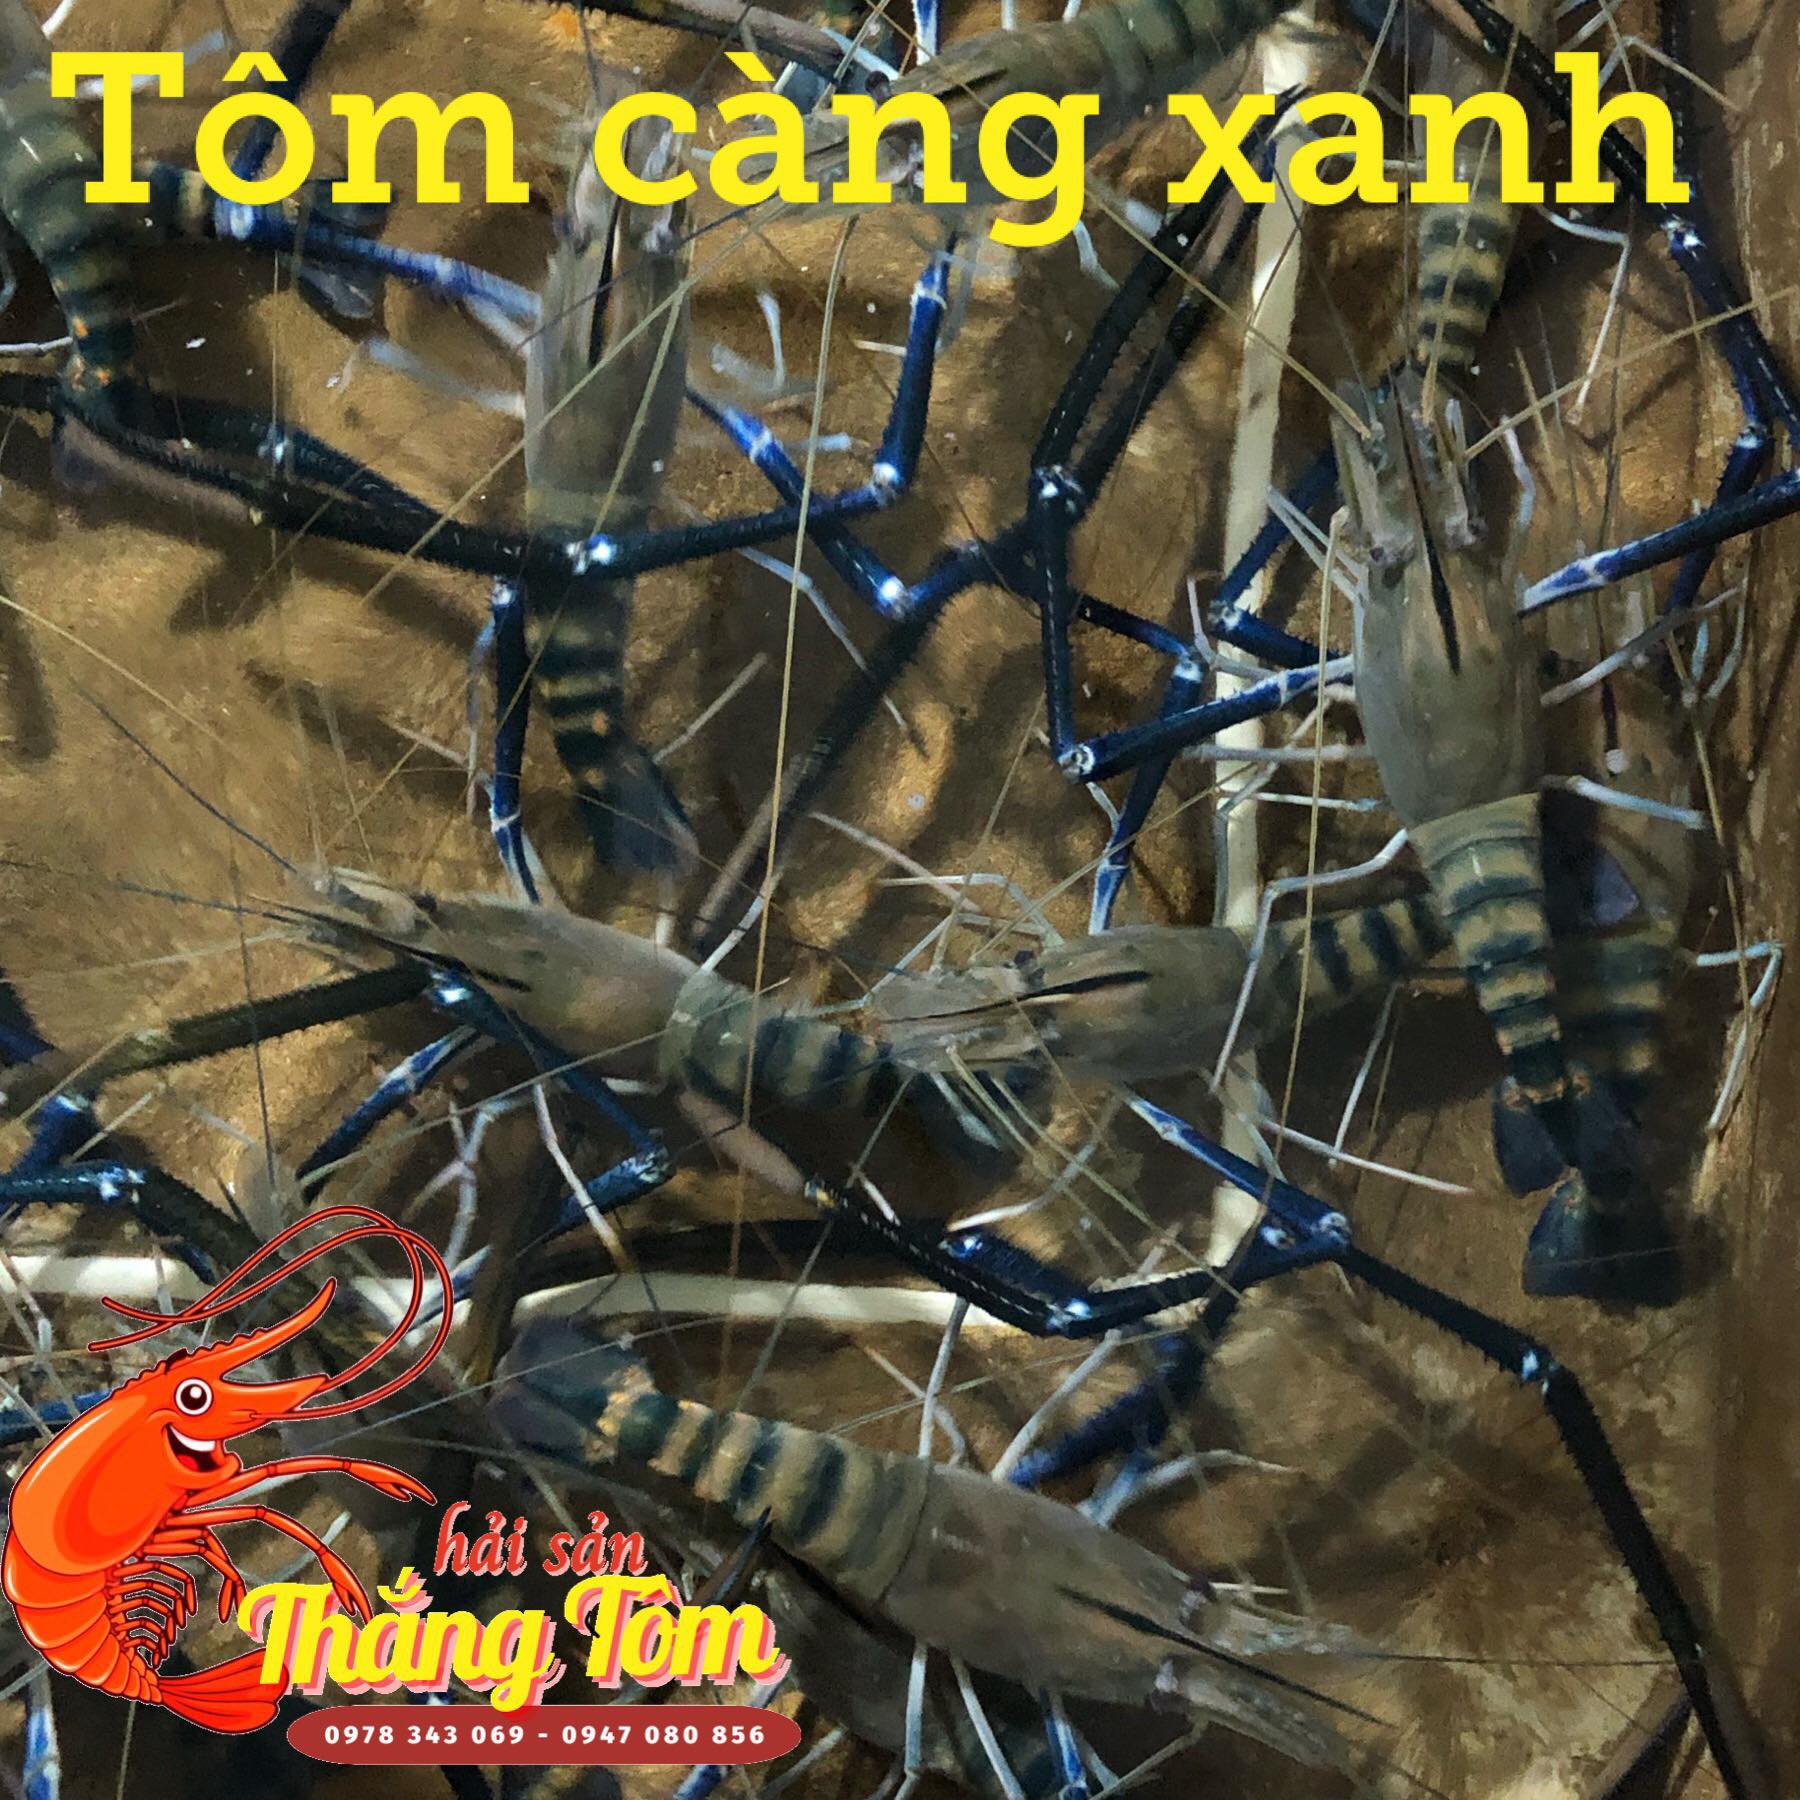 tom-cang-xanh-loai-2-size-10-15-con-tuoi-song-gia-re-quan-7-tphcm.jpg